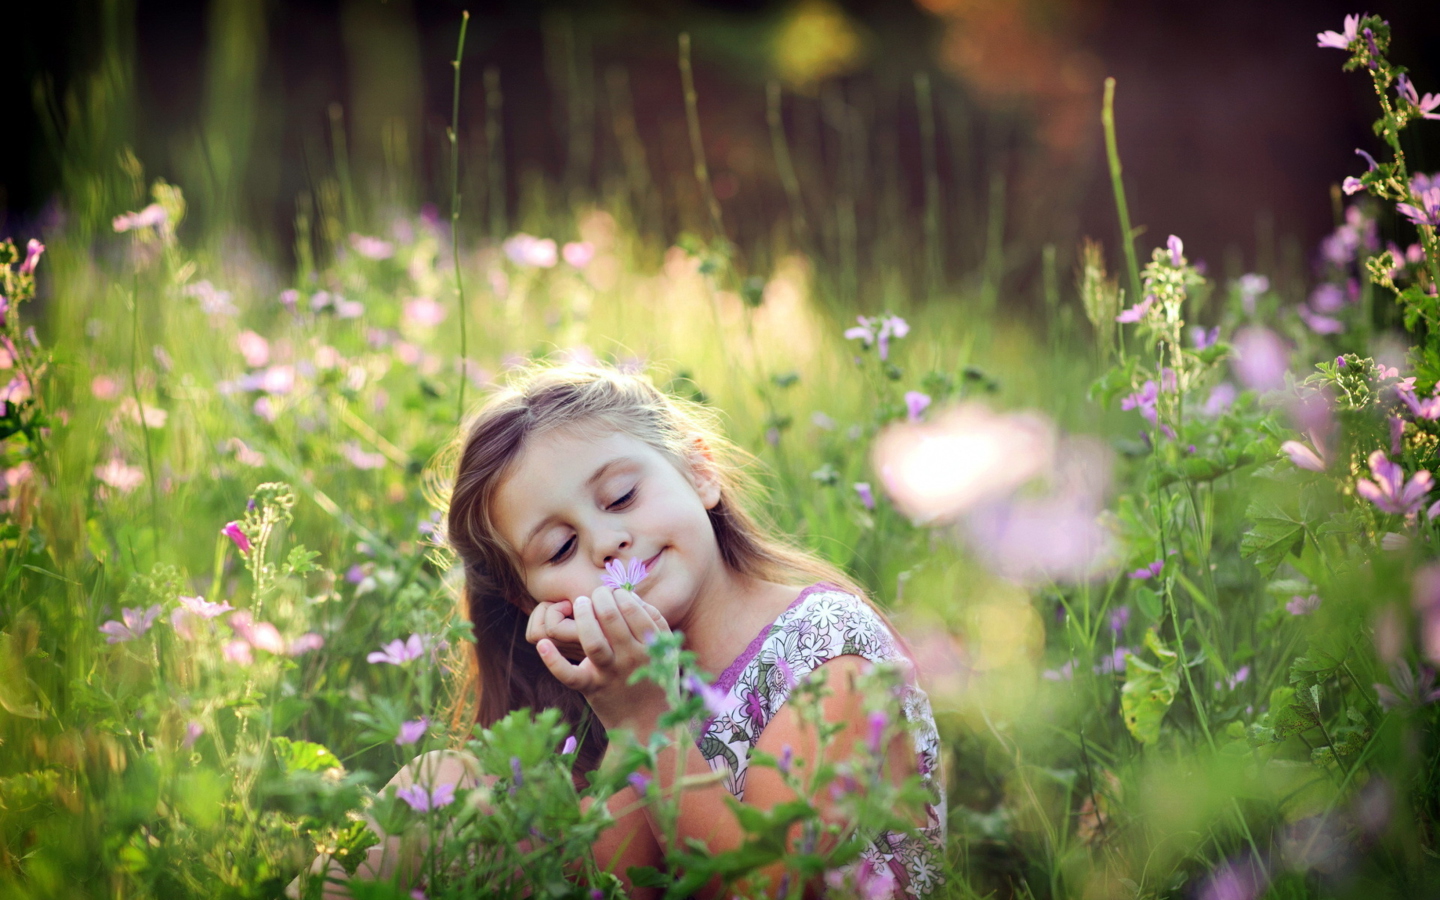 Обои Little Girl Enjoying Nature 1440x900